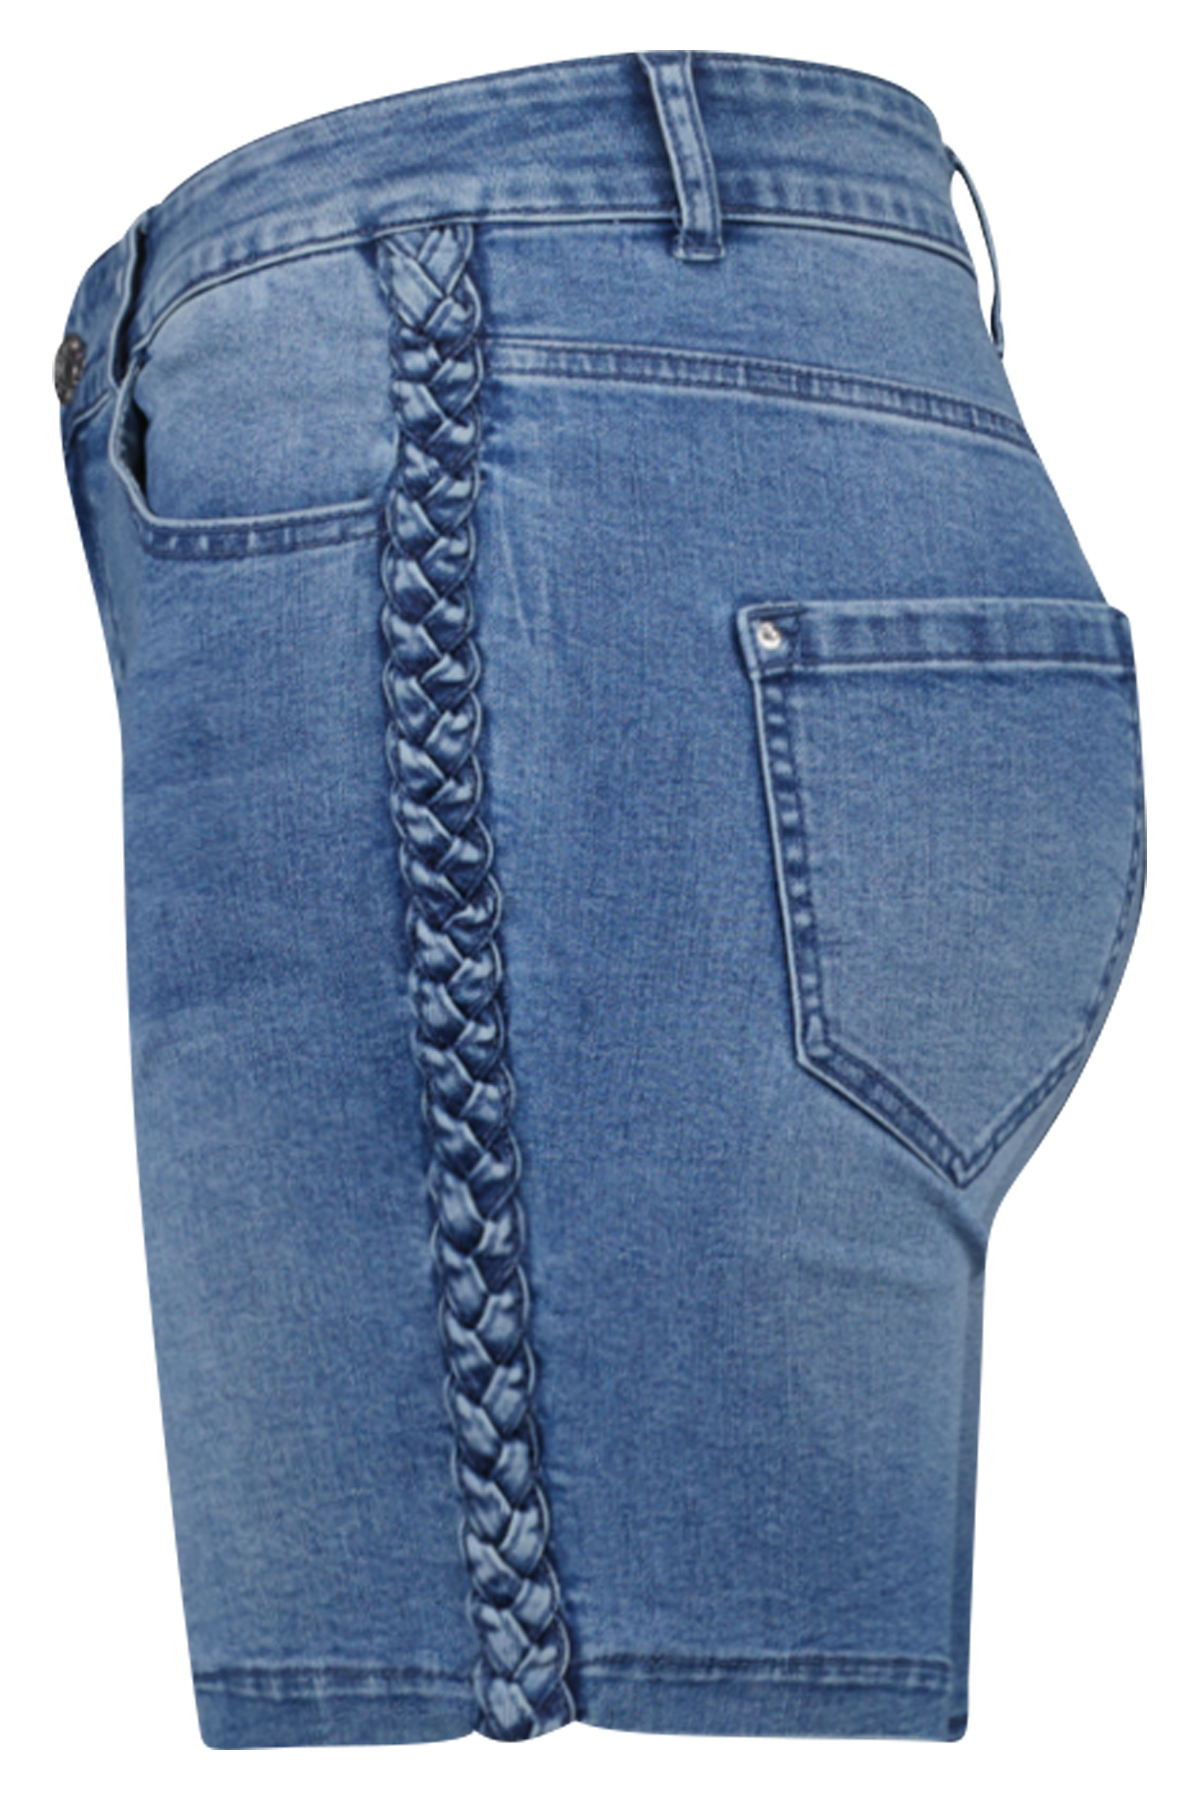 Jeans-Shorts mit geflochtener Verzierung  image number 3